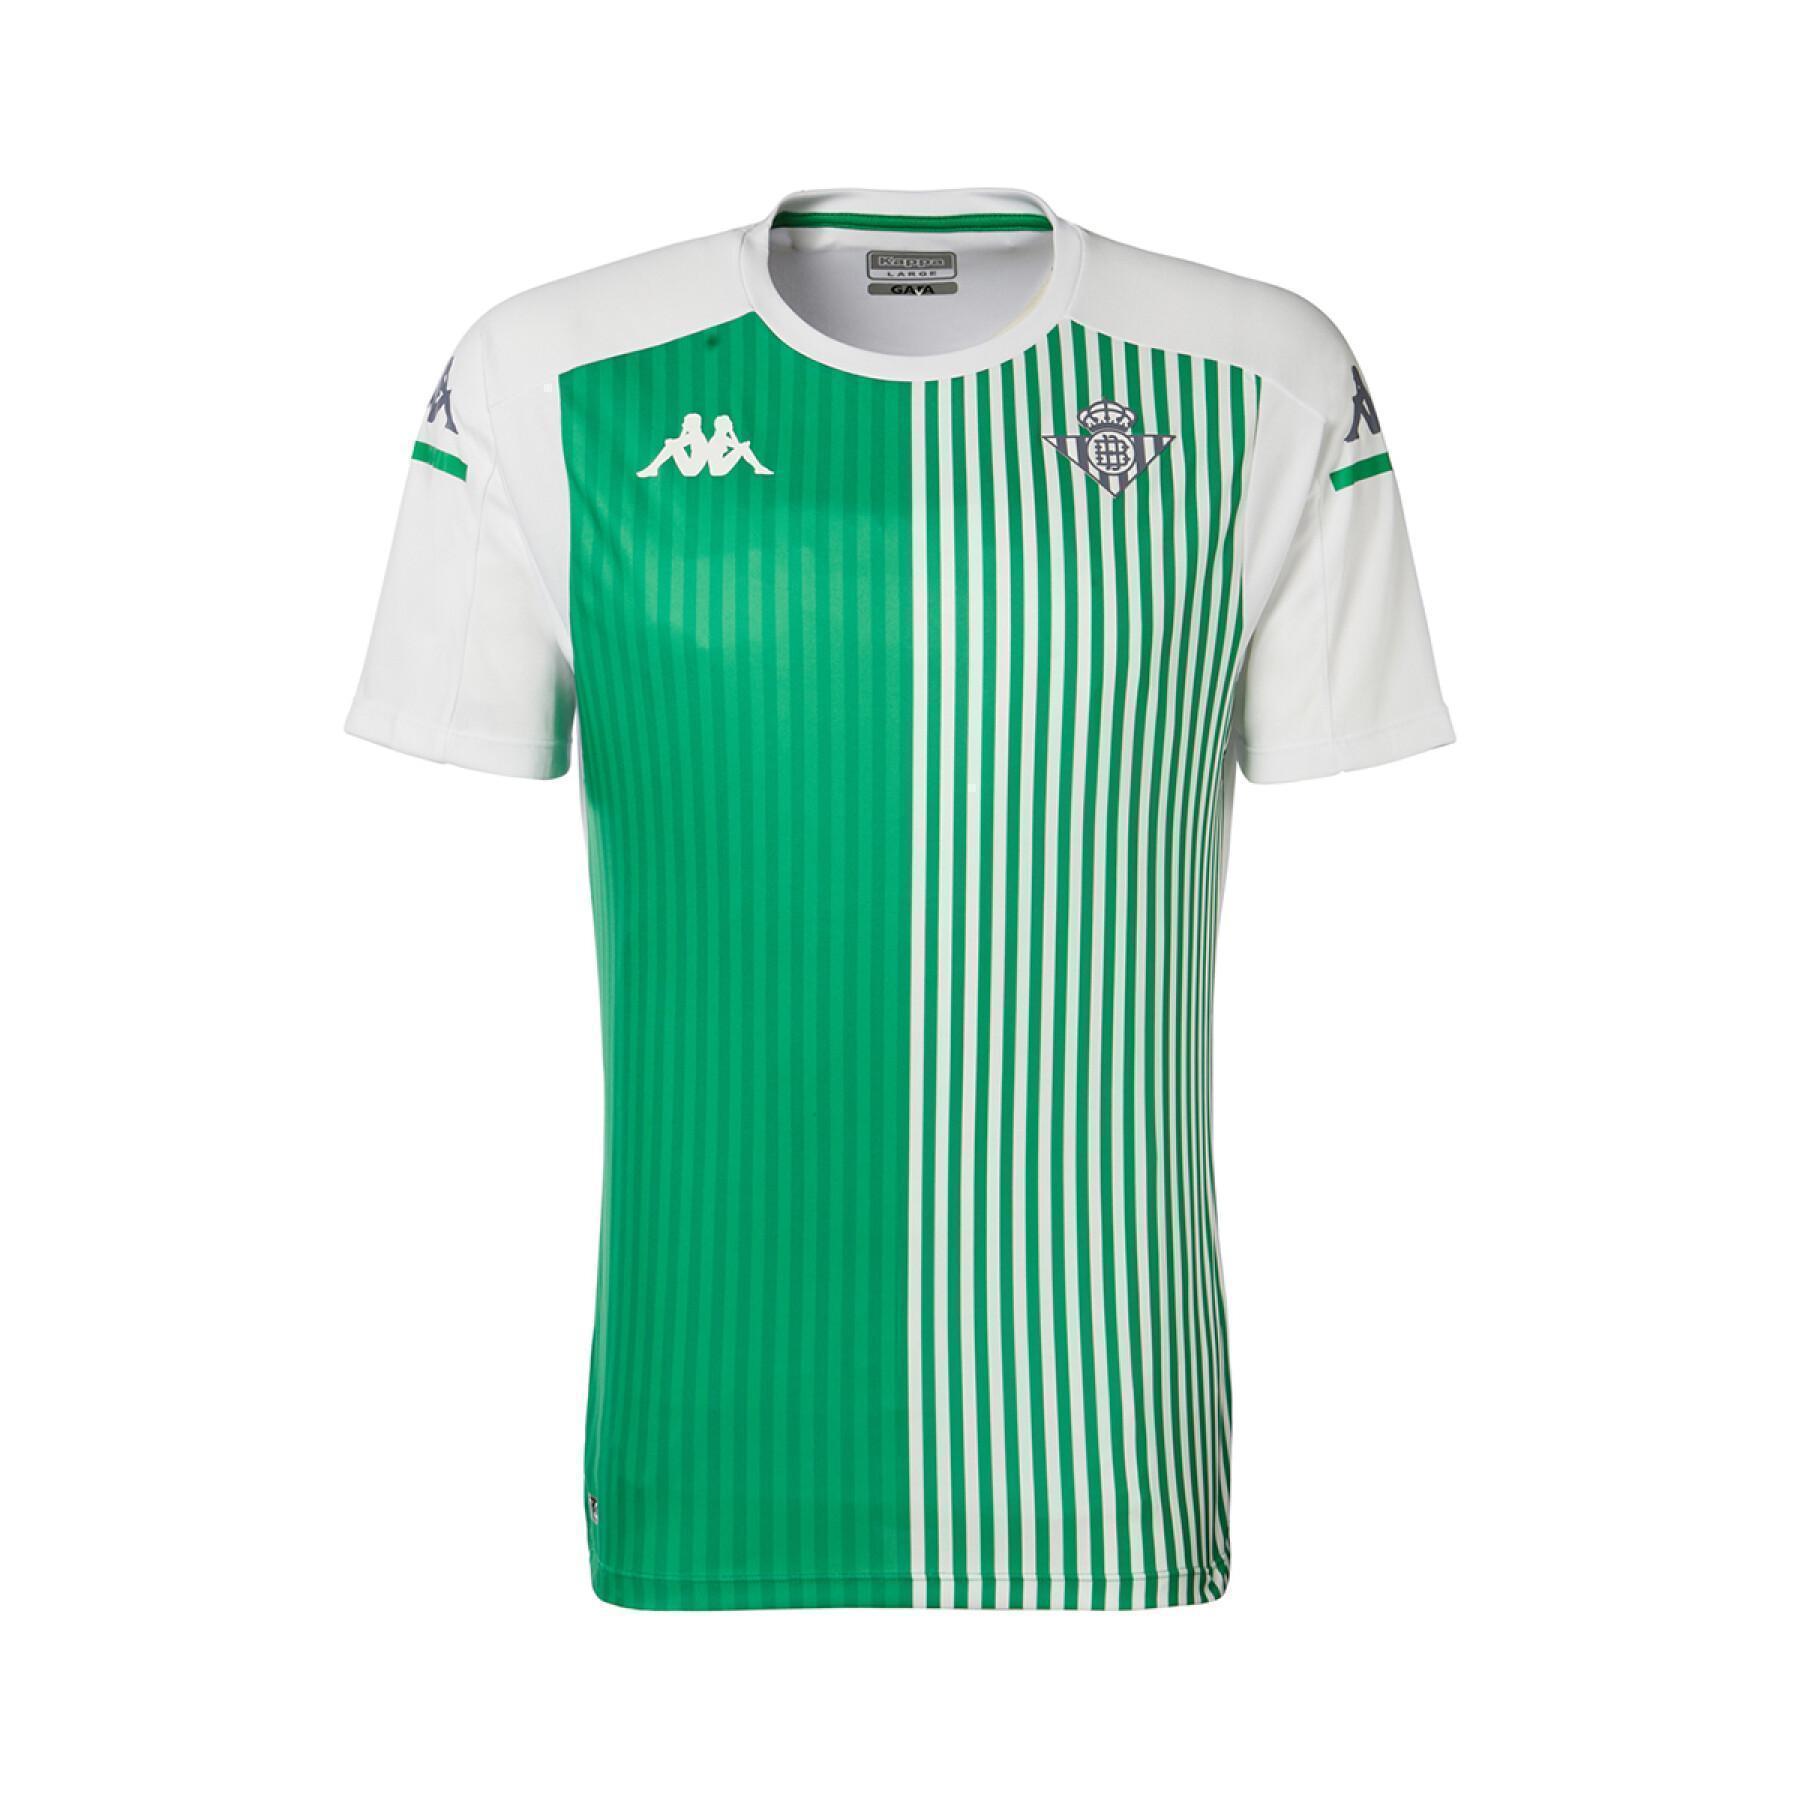 Children's jersey Real Betis Seville 2021/22